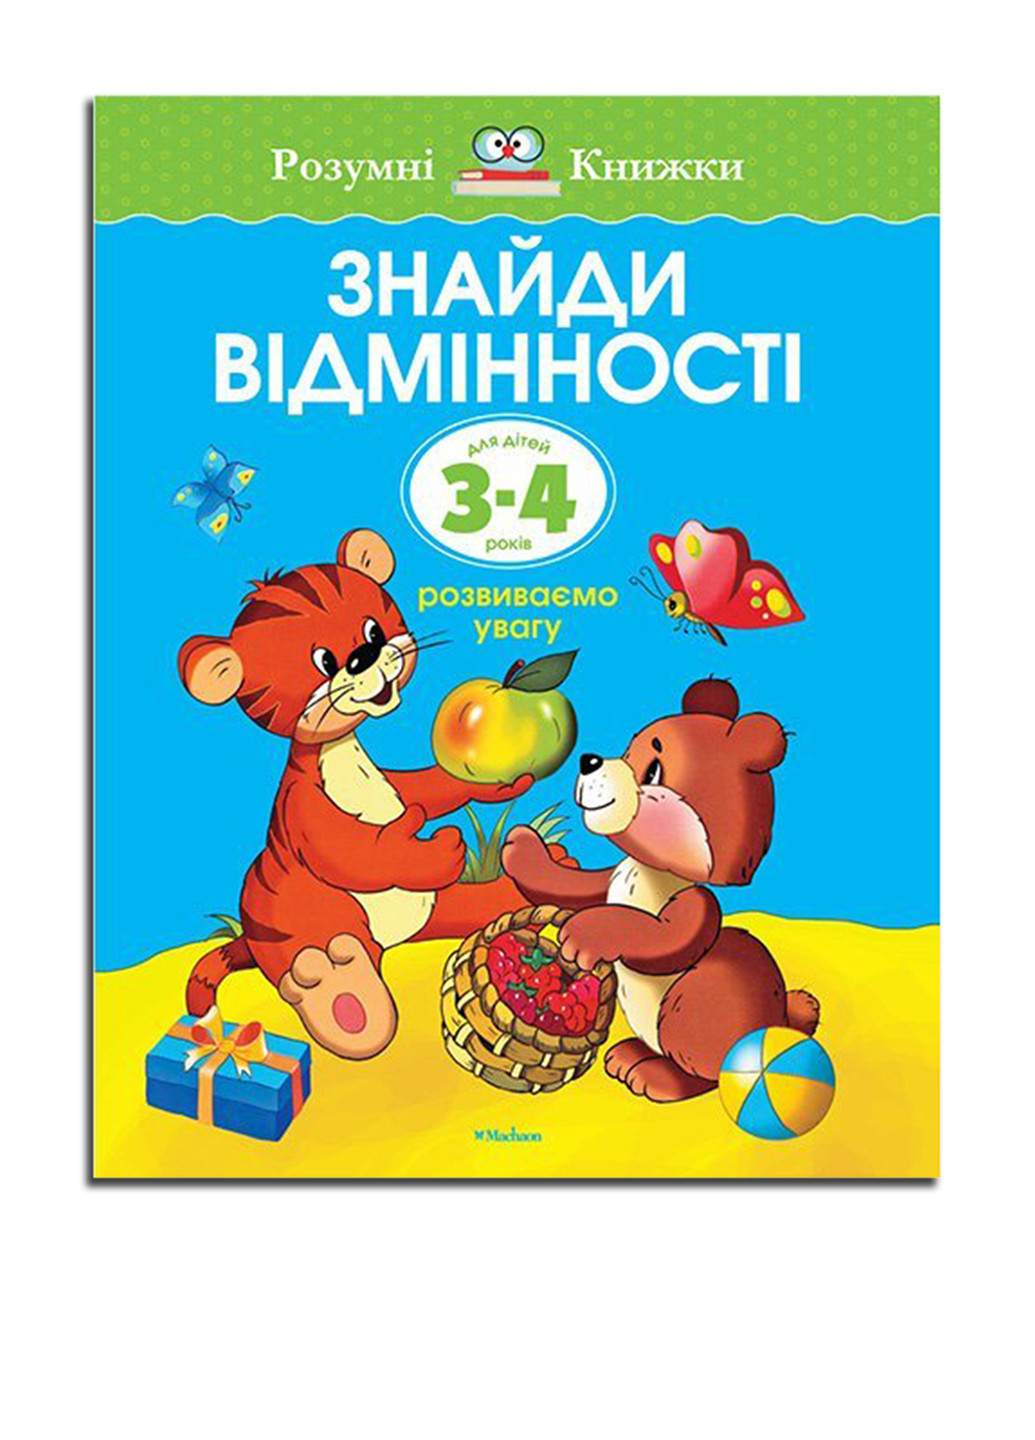 Книга "Знайдіть відмінності. Для дітей 3-4 років" Издательство "Махаон" (16955323)